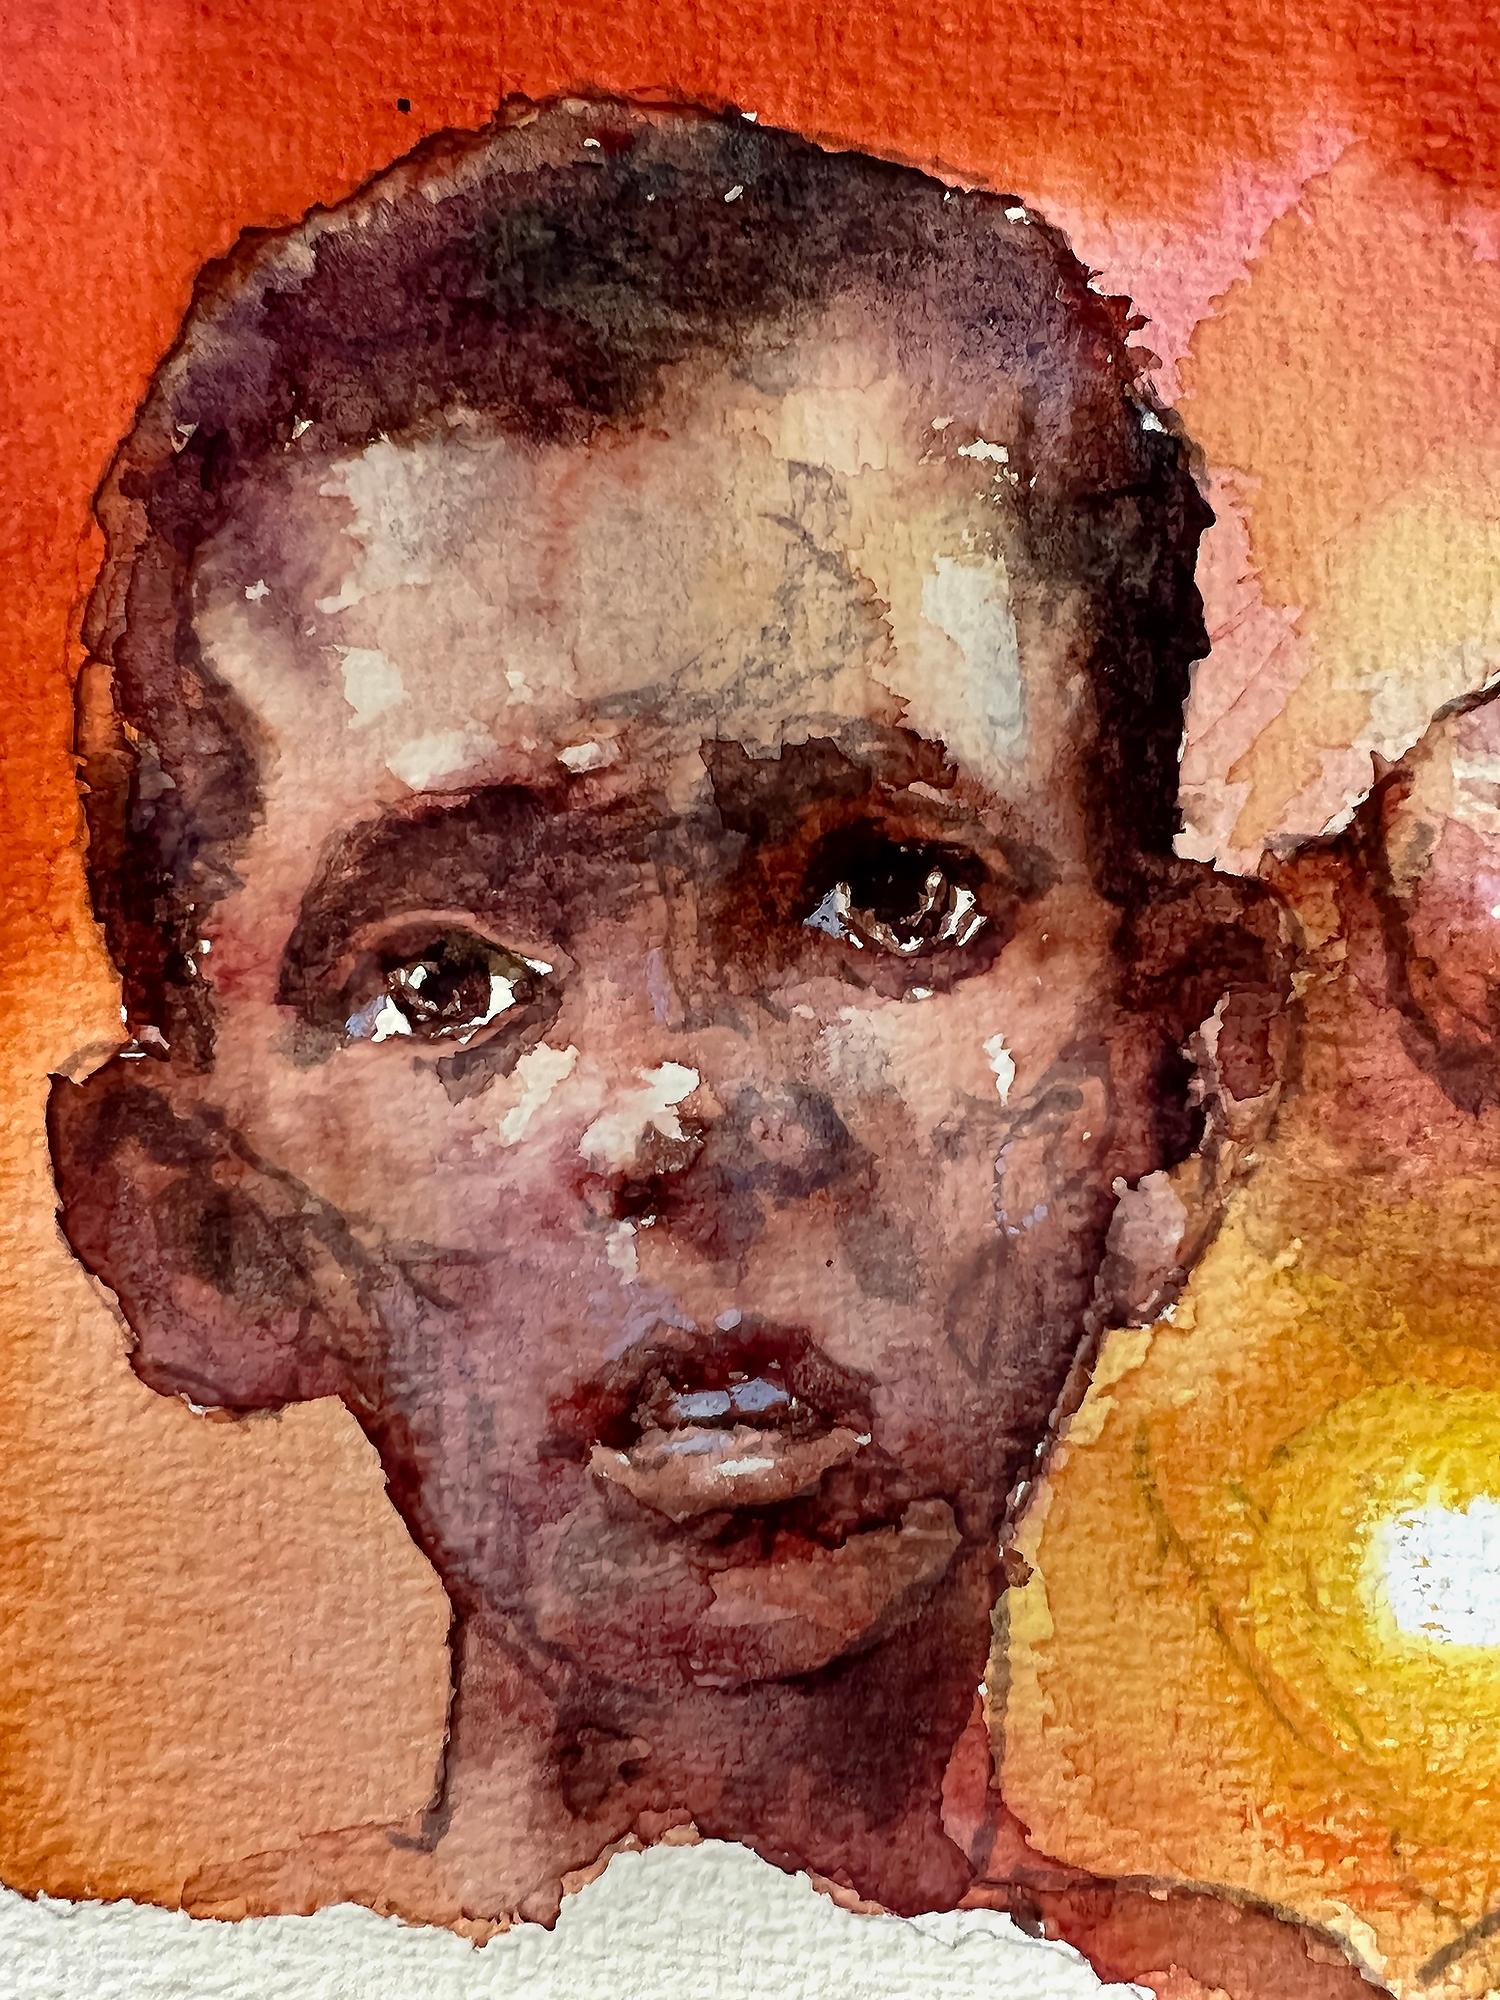 Les enfants africains souffrant de famine et de désespoir aux couleurs chaudes - L'Afrique est en voie de disparition   - Réalisme Art par Victor Olson